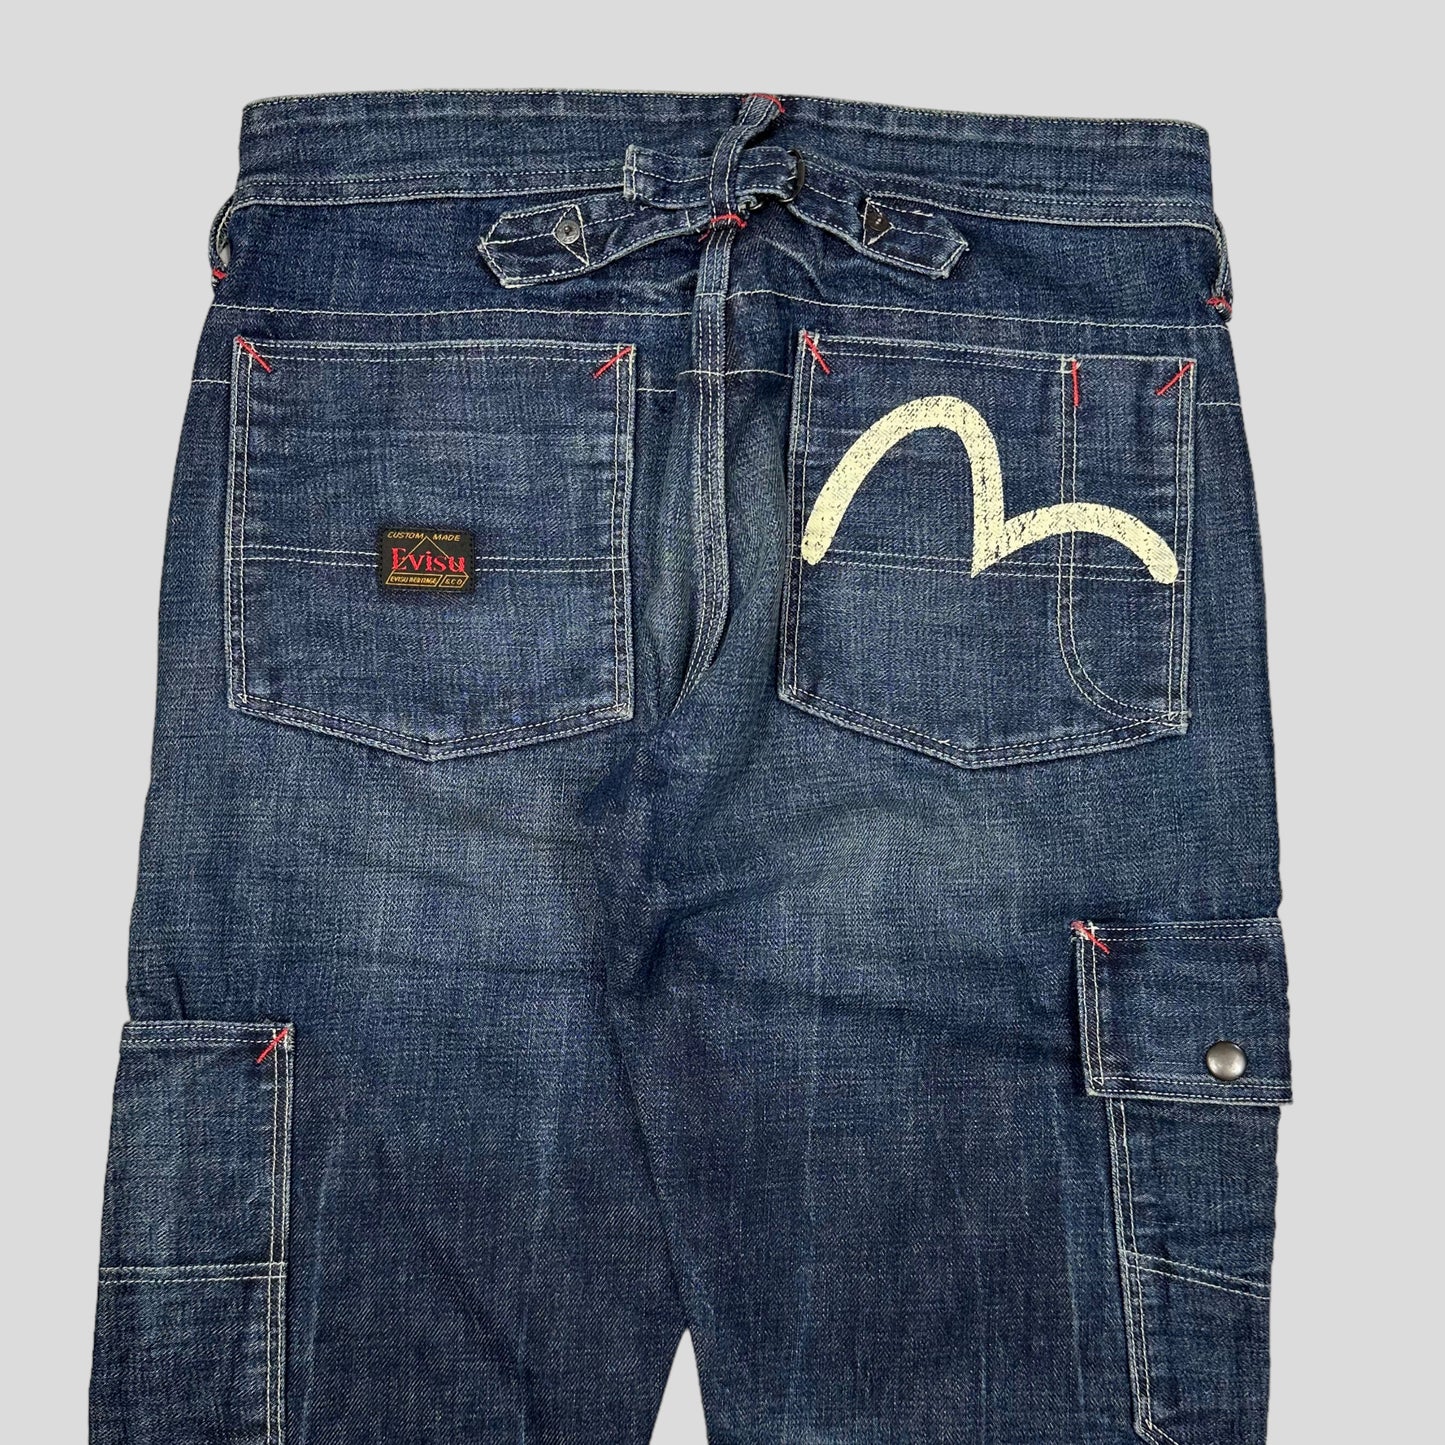 Evisu 00’s Denim Carpenter Jeans - 30-31